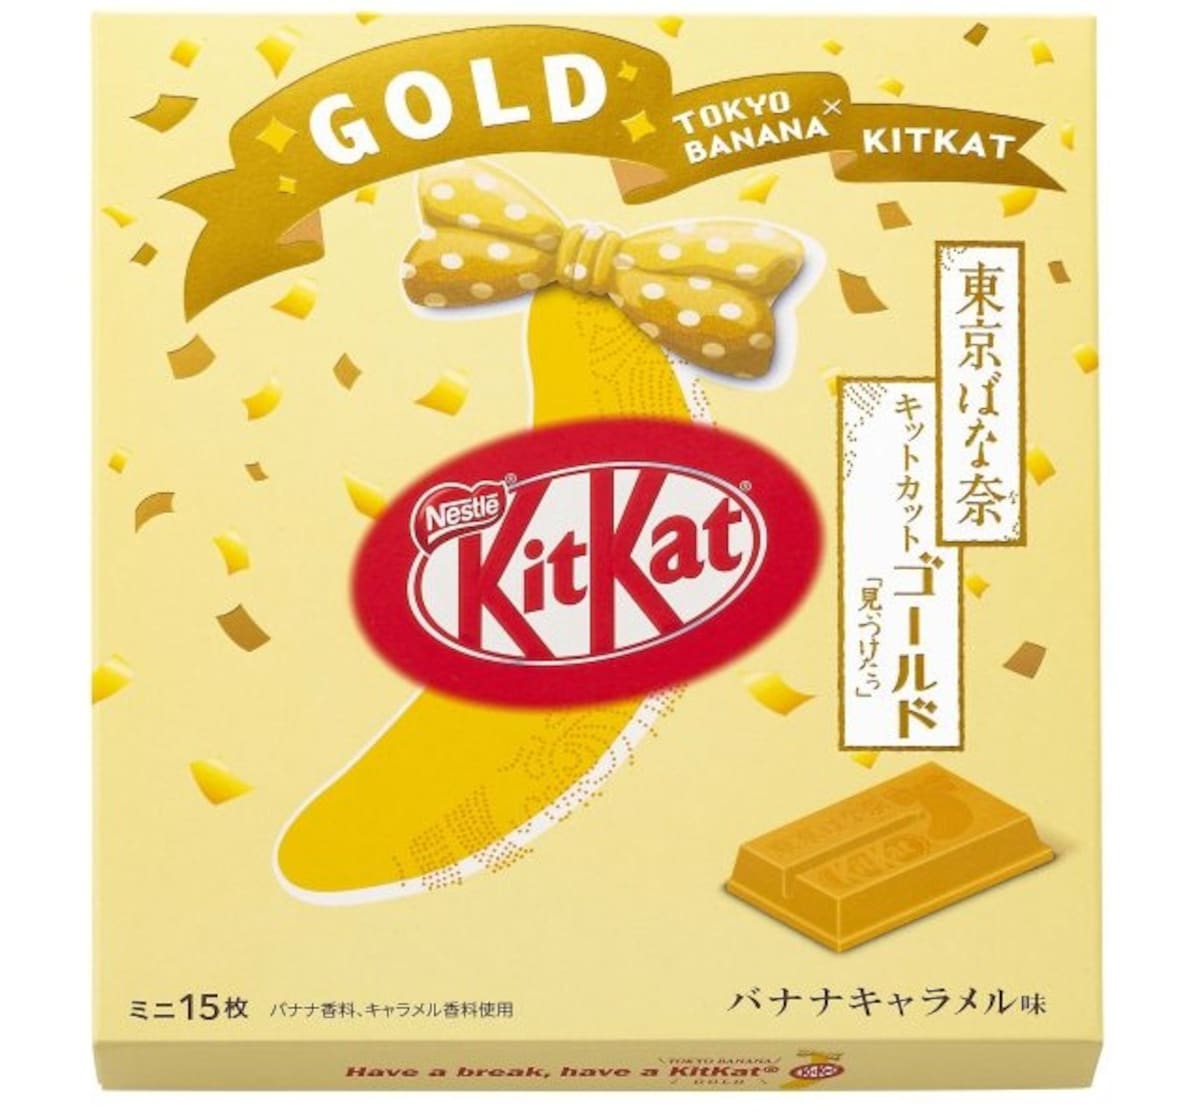 Introducing Gold Caramel Banana Kit Kats | All About Japan